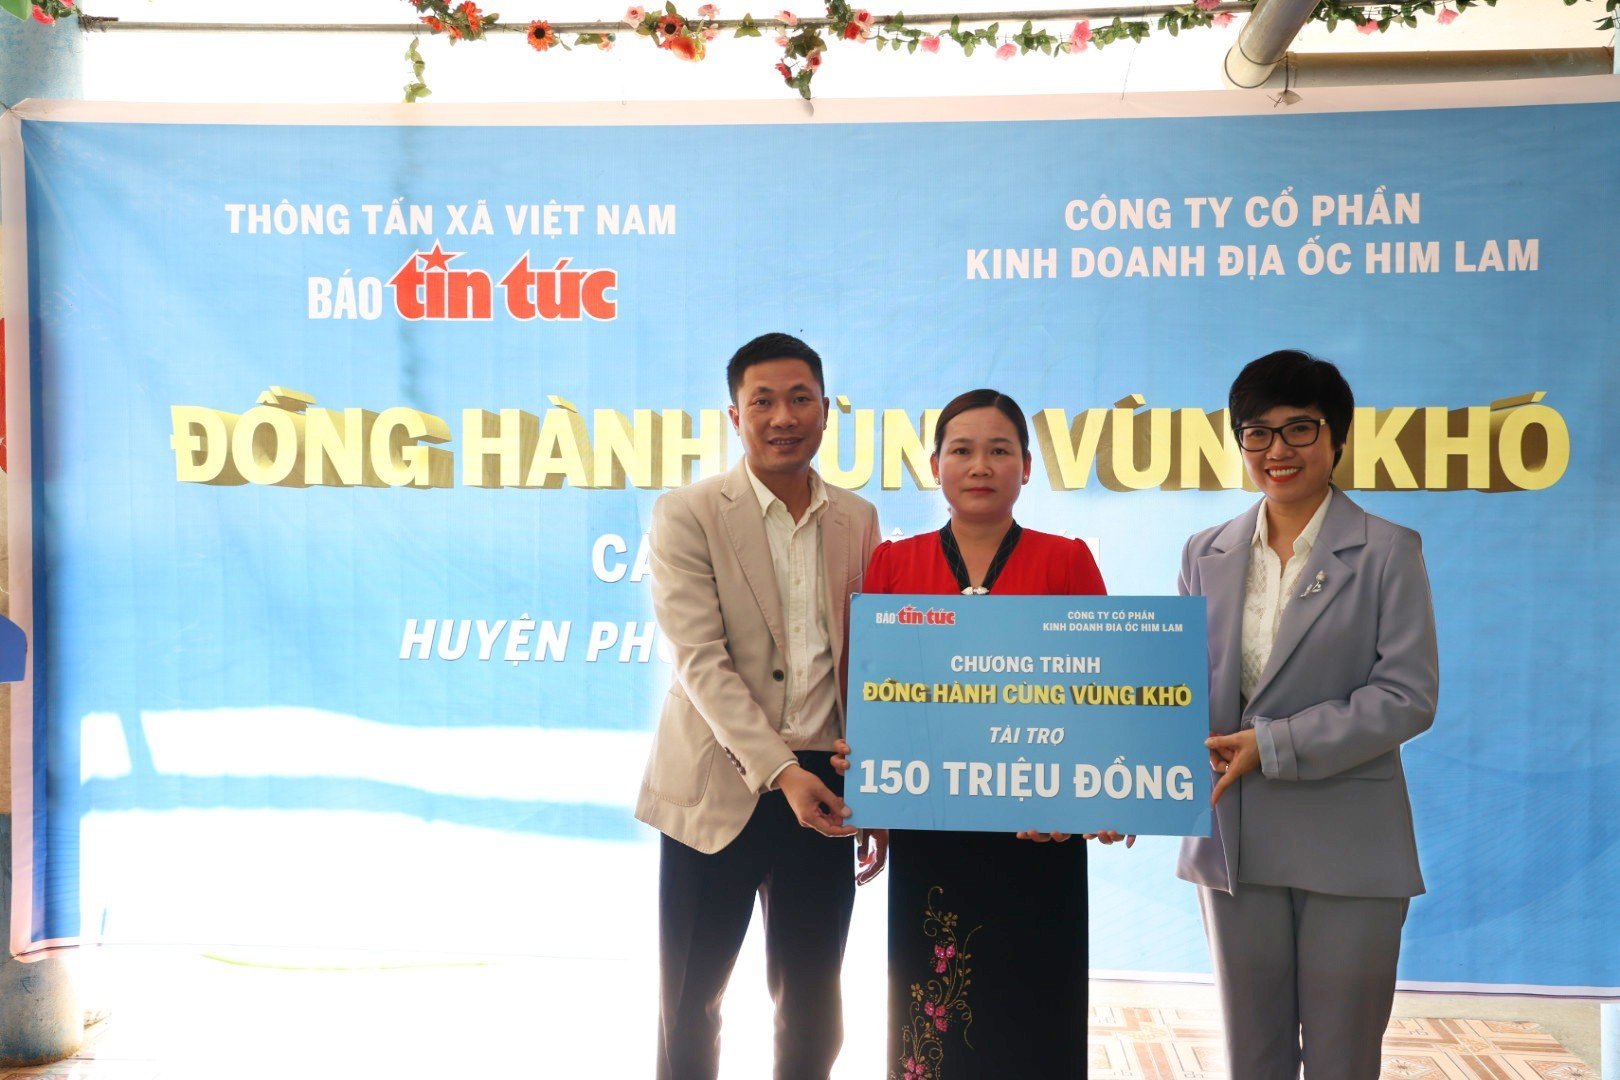 Him Lam land hỗ trợ 300 triệu đồng cho 2 điểm trường khó khăn tại Phong Thổ, Lai Châu - Ảnh 1.